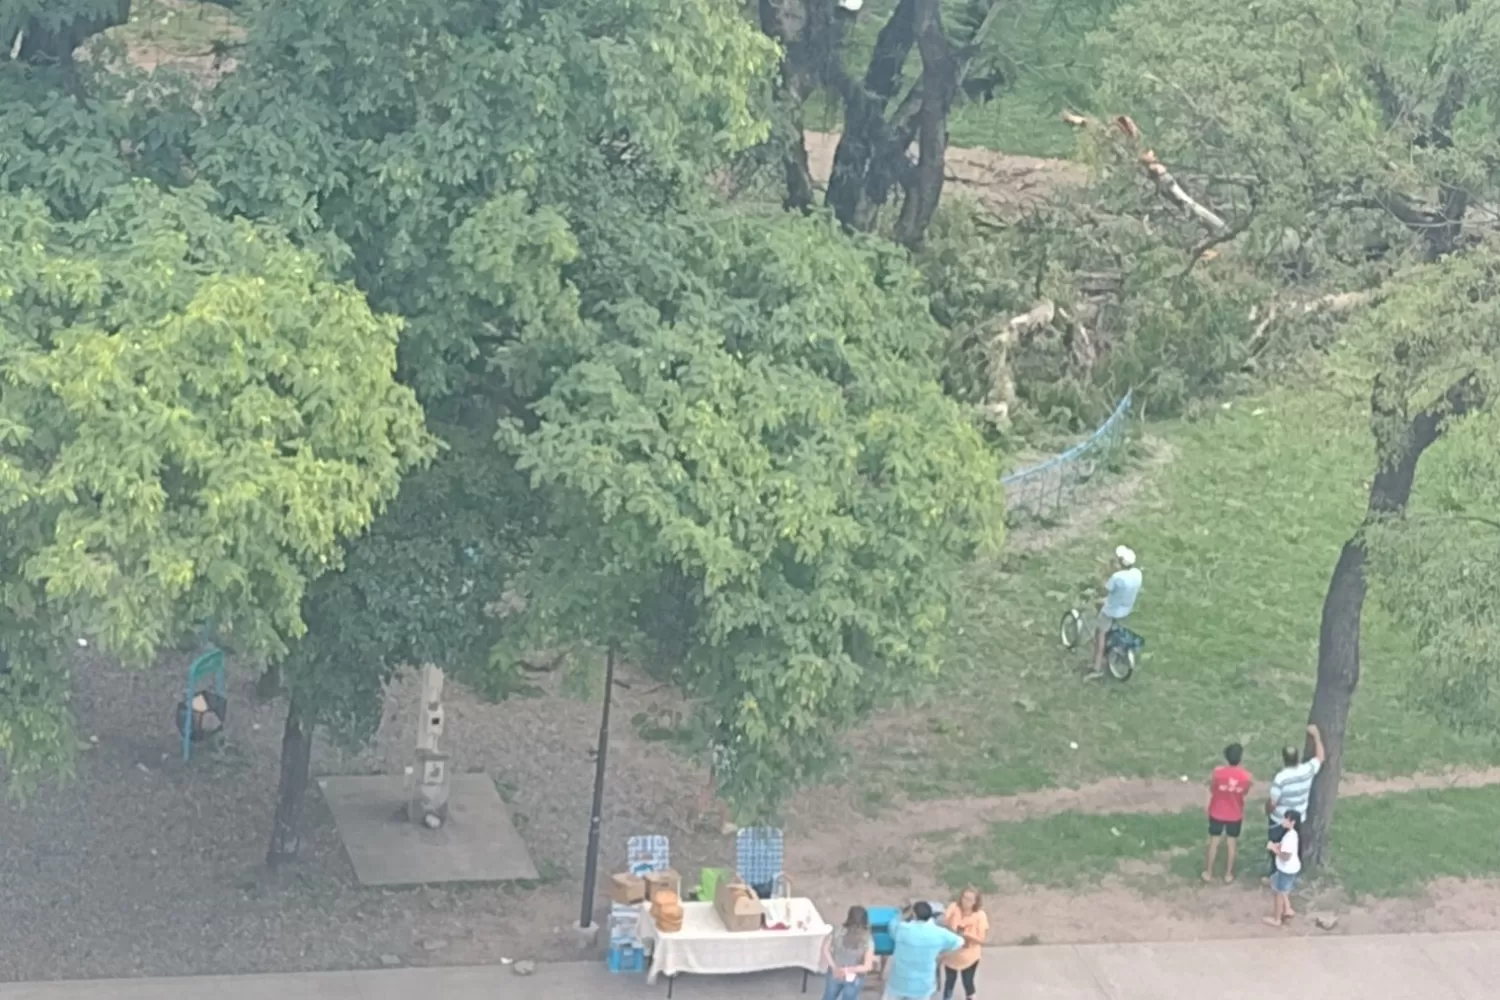 Cayó un árbol sobre los juegos infantiles del parque Avellaneda: hay niños heridos